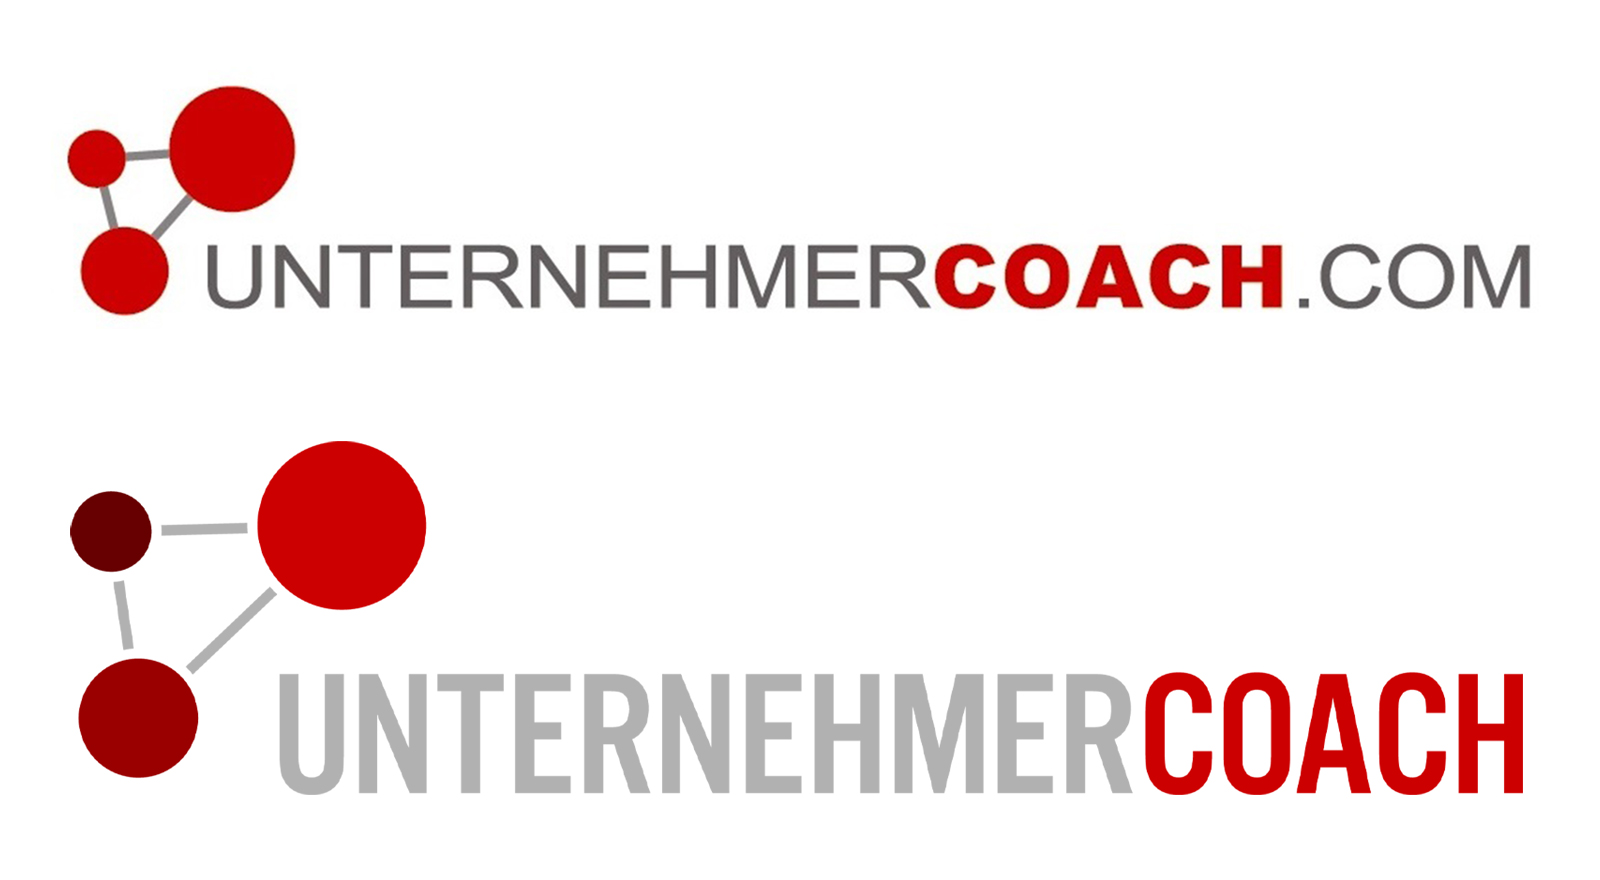 altes und neues logo der firma unternehmercoach gmbh_version1_1600x880px